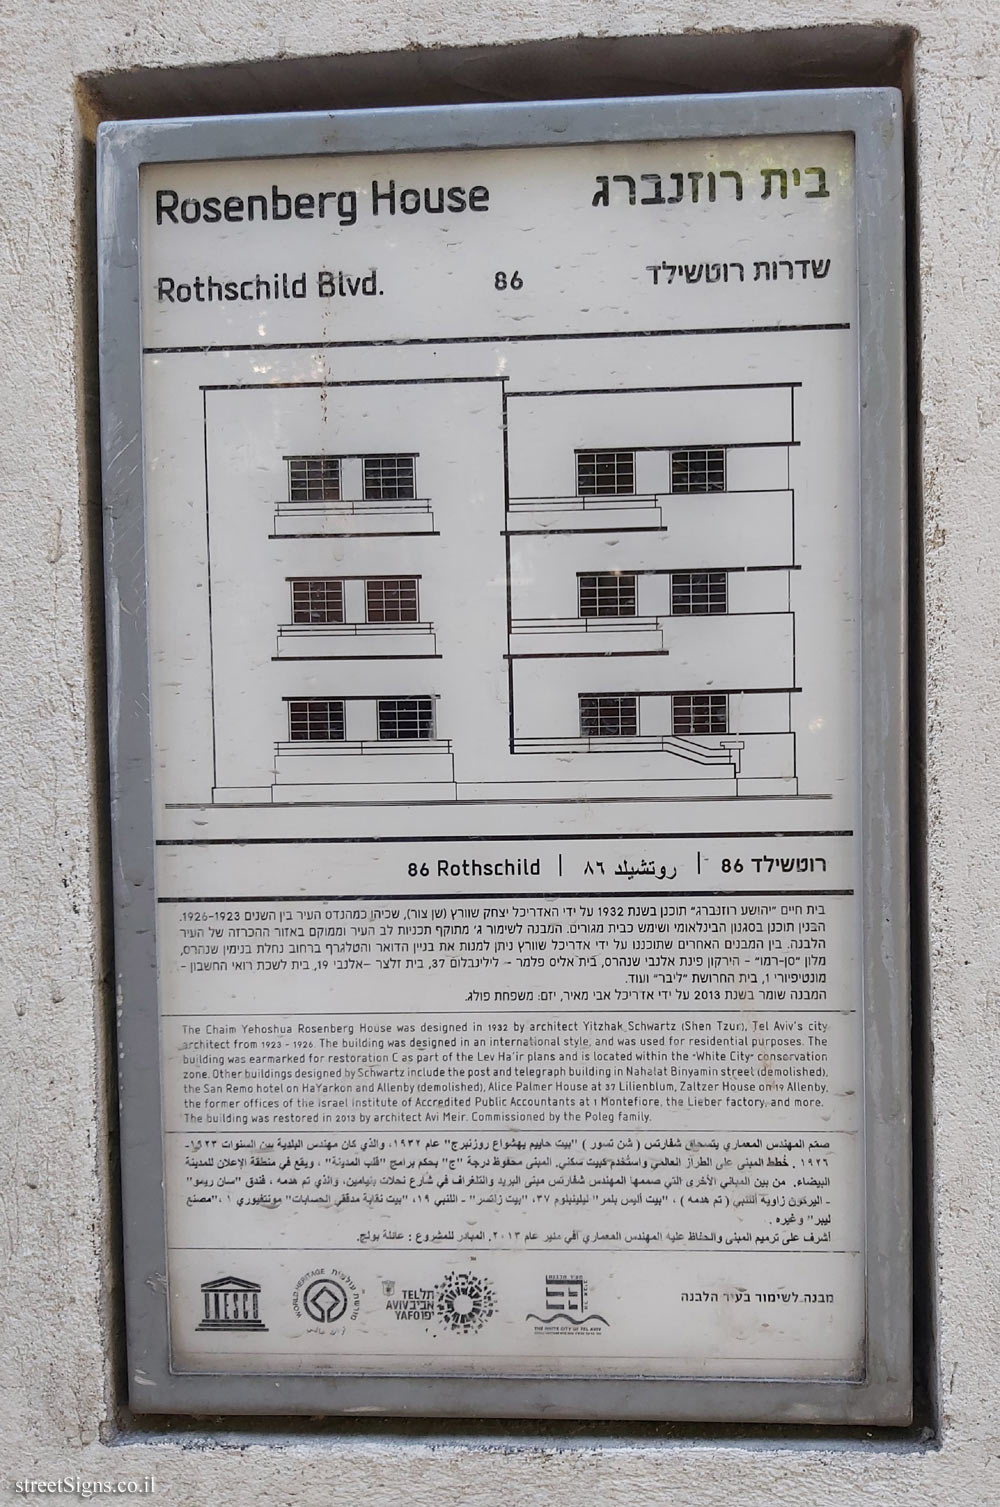 Tel Aviv - buildings for conservation - Rosenberg House, Rothschild 86